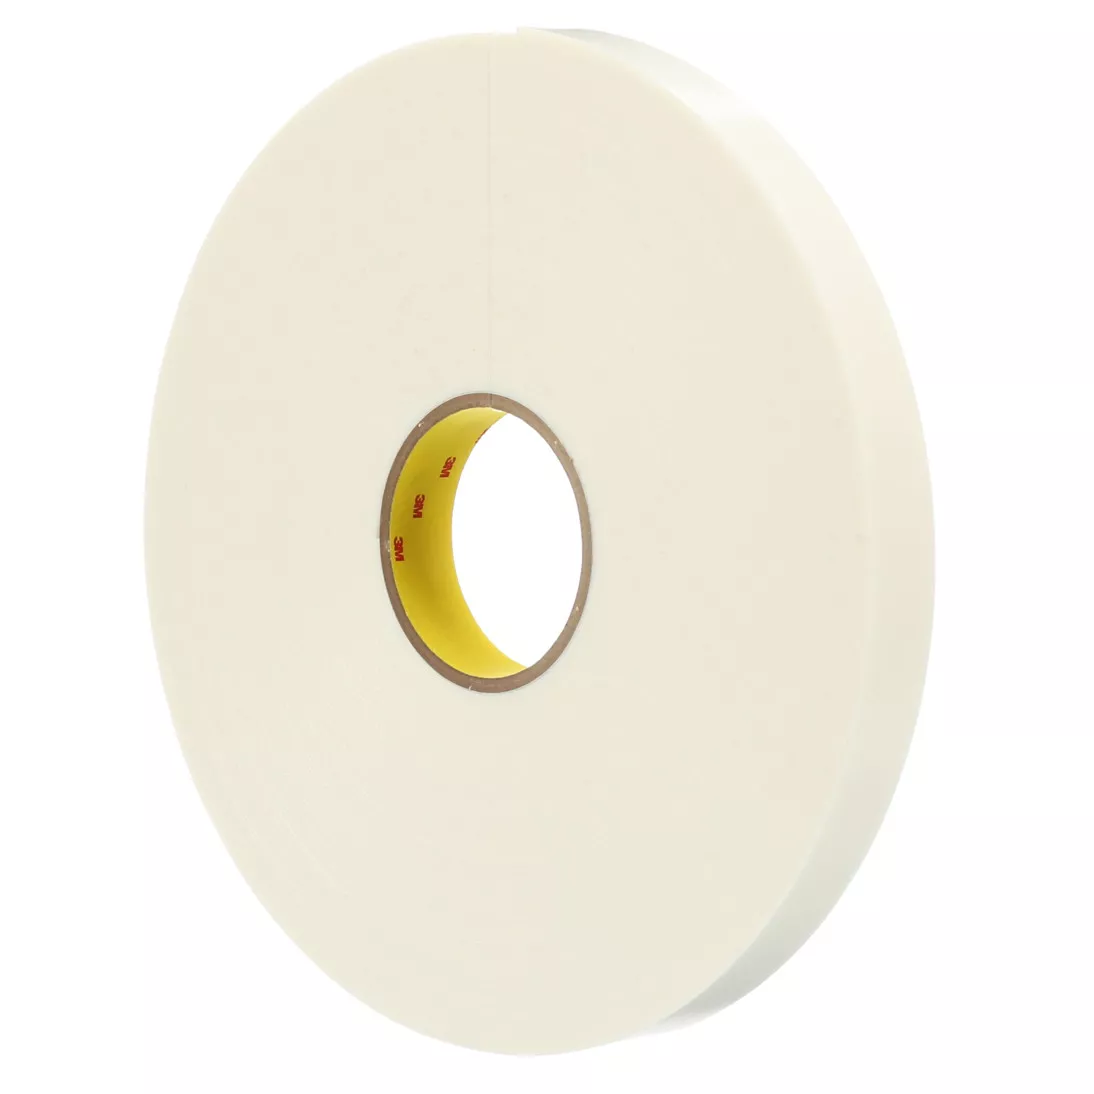 3M™ Double Coated Polyethylene Foam Tape 4466W, White, 54 in x 36 Yds,
62 mil, 1 roll per case